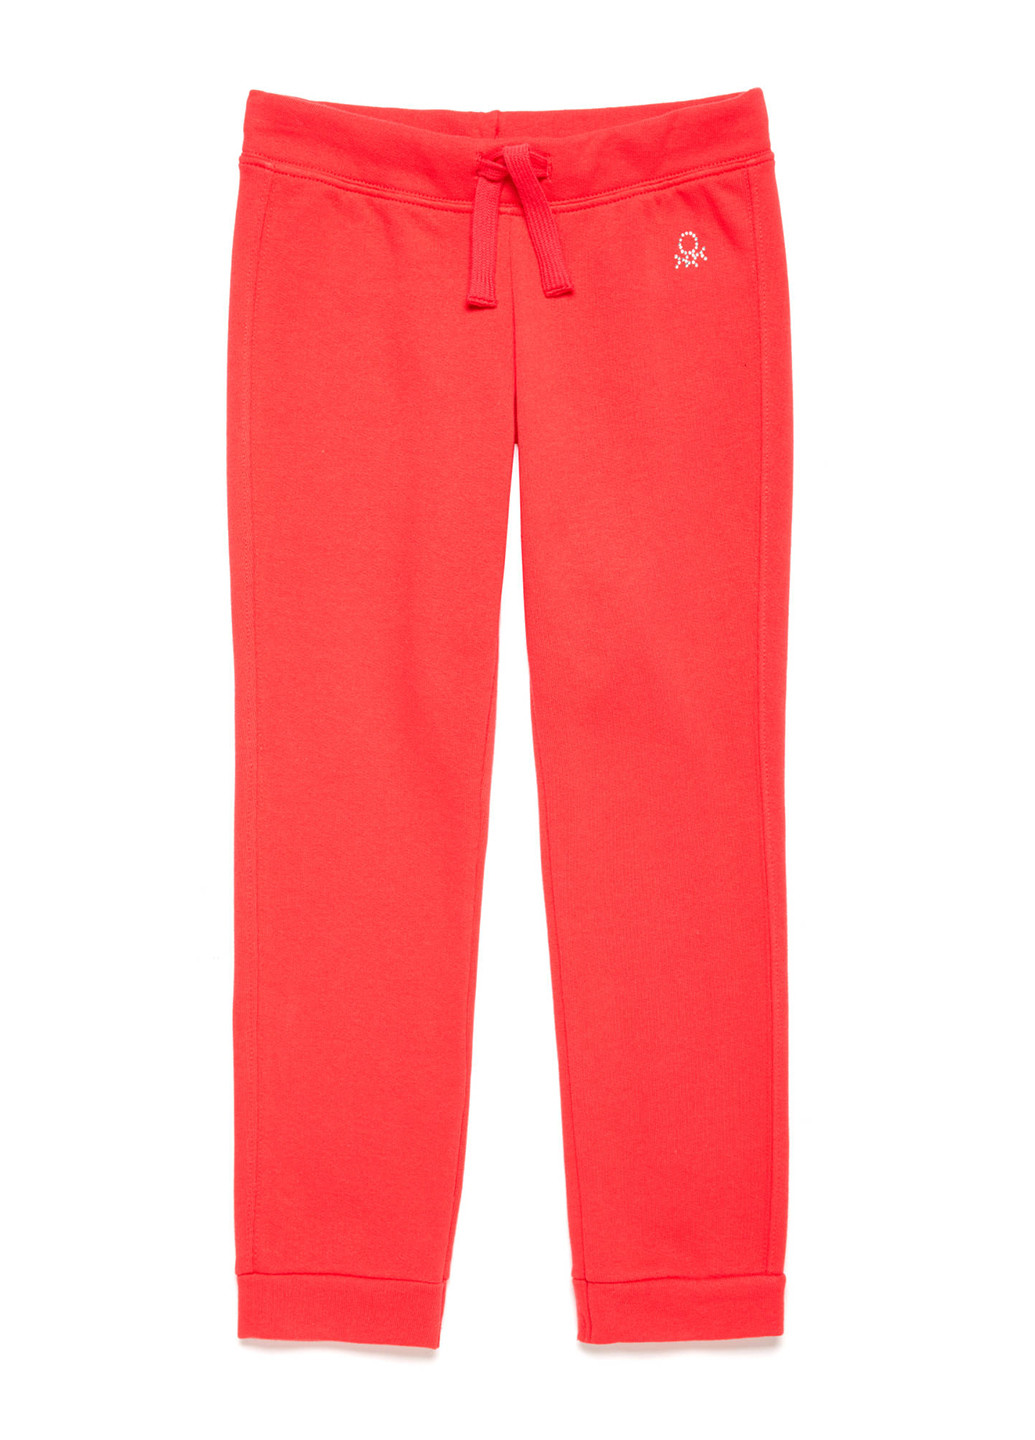 Красные спортивные демисезонные джоггеры брюки United Colors of Benetton